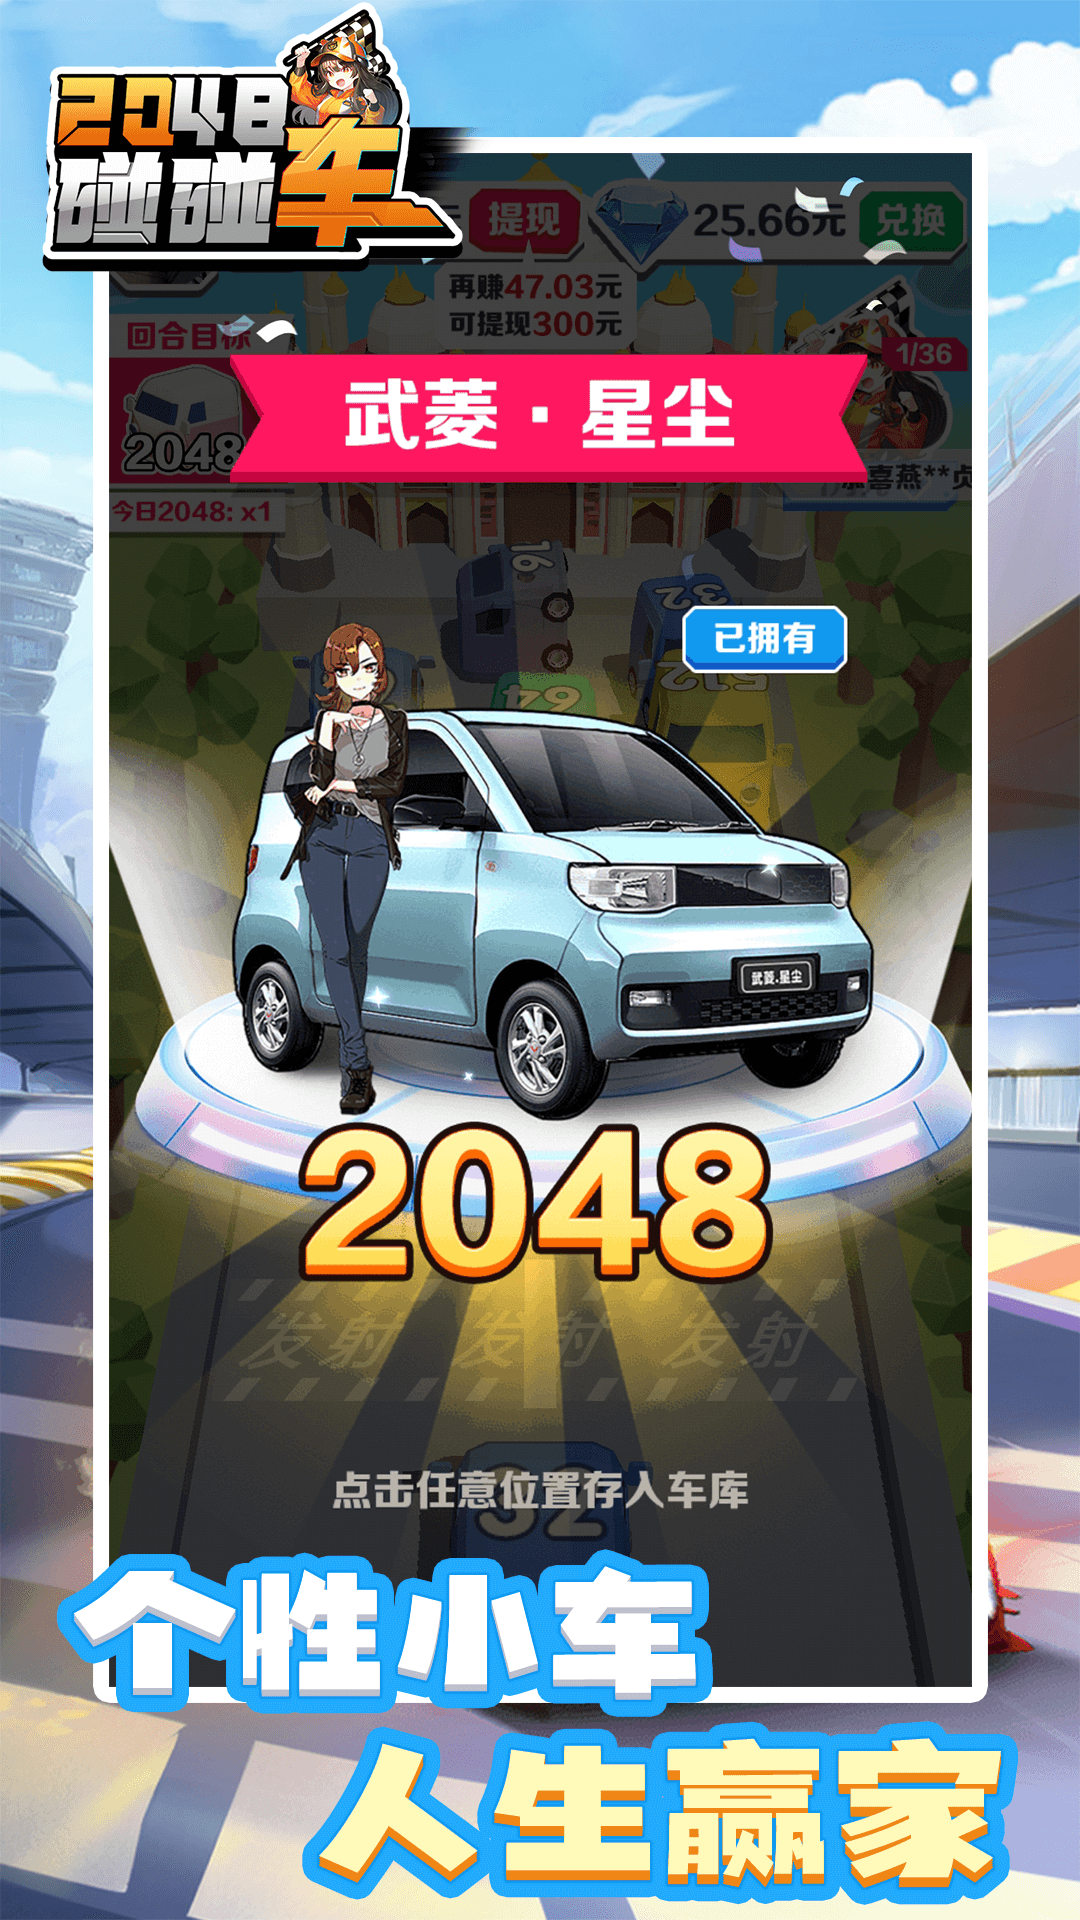 2048碰碰车免费手游最新版本2